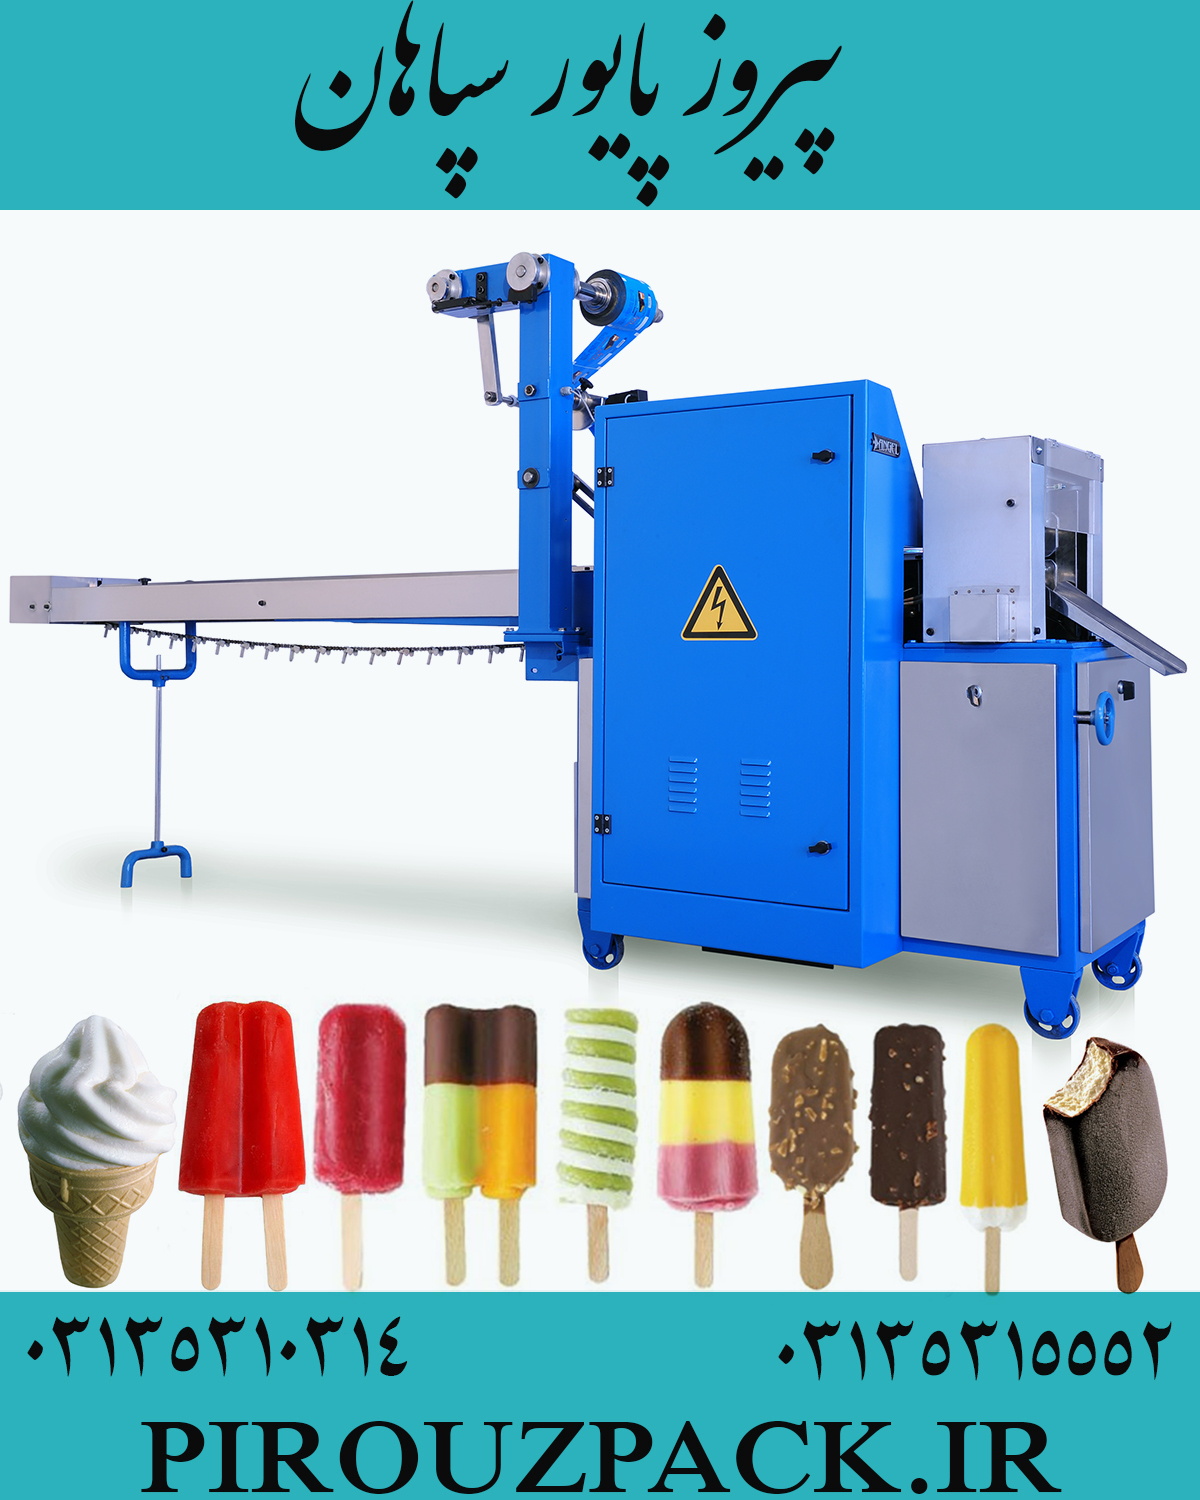 دستگاه بسته بندی بستنی زمستانه در ماشین سازی پیروزپک